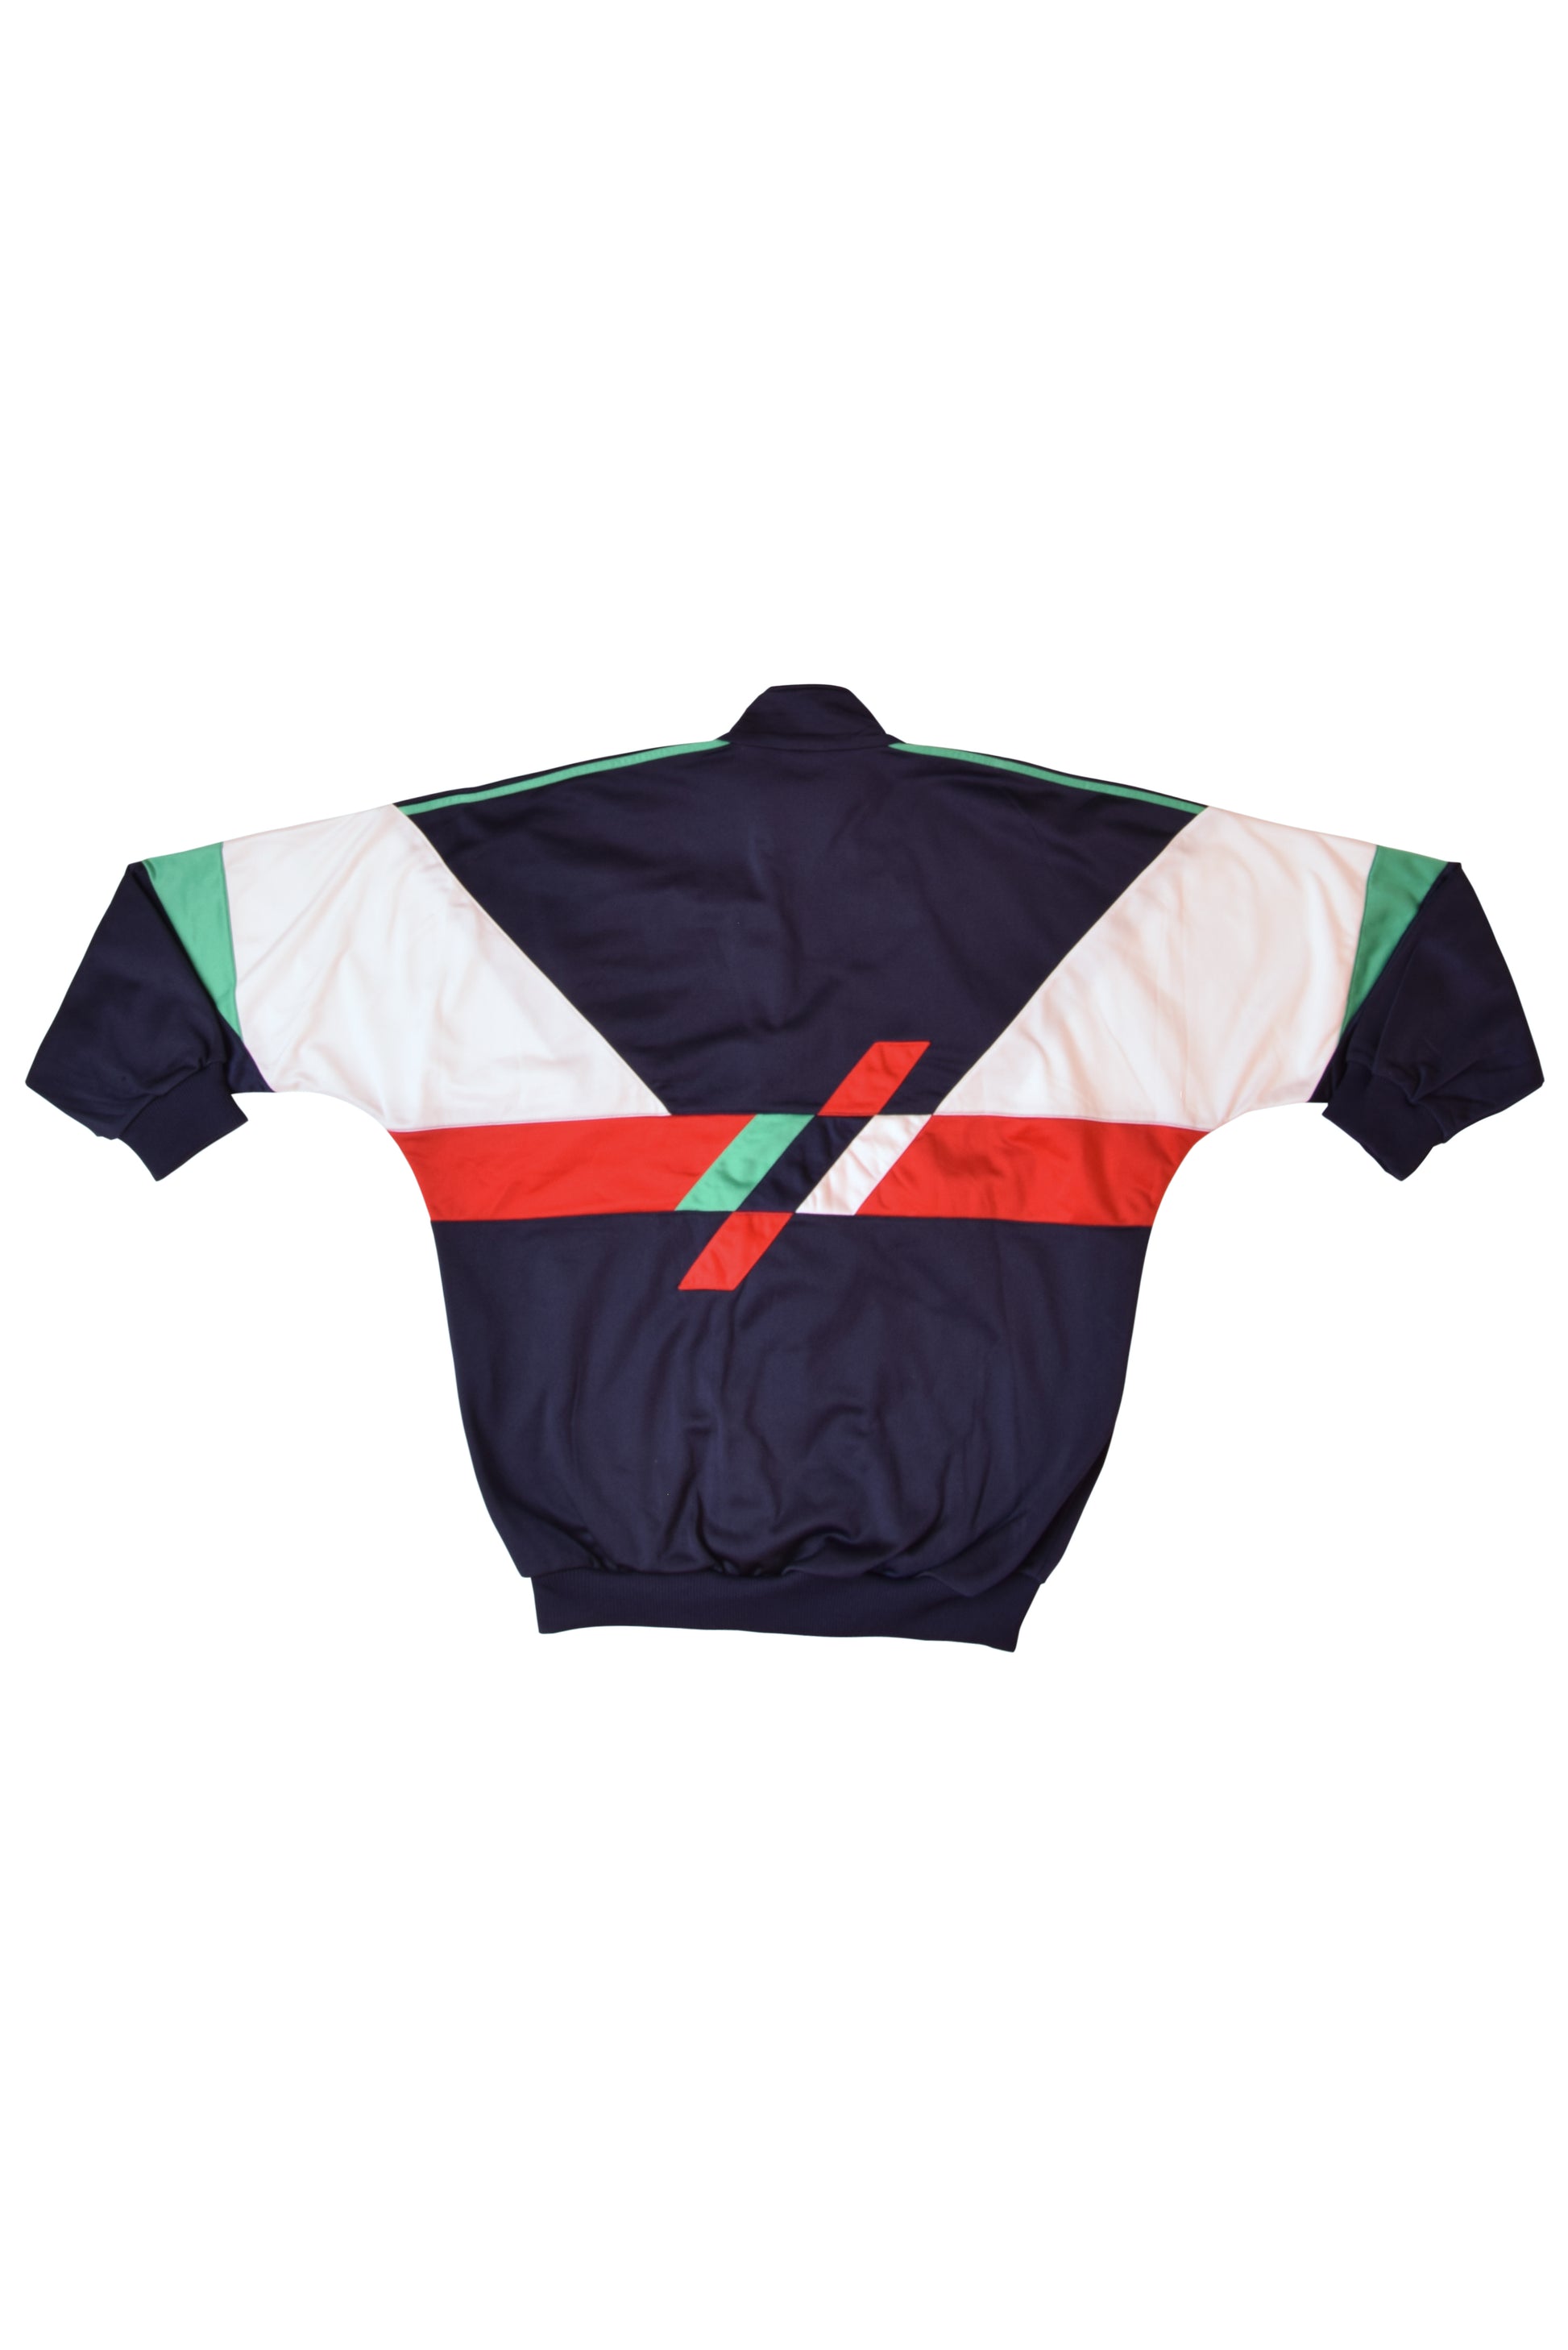 Vintage 90's Adidas Jacket / Track top 